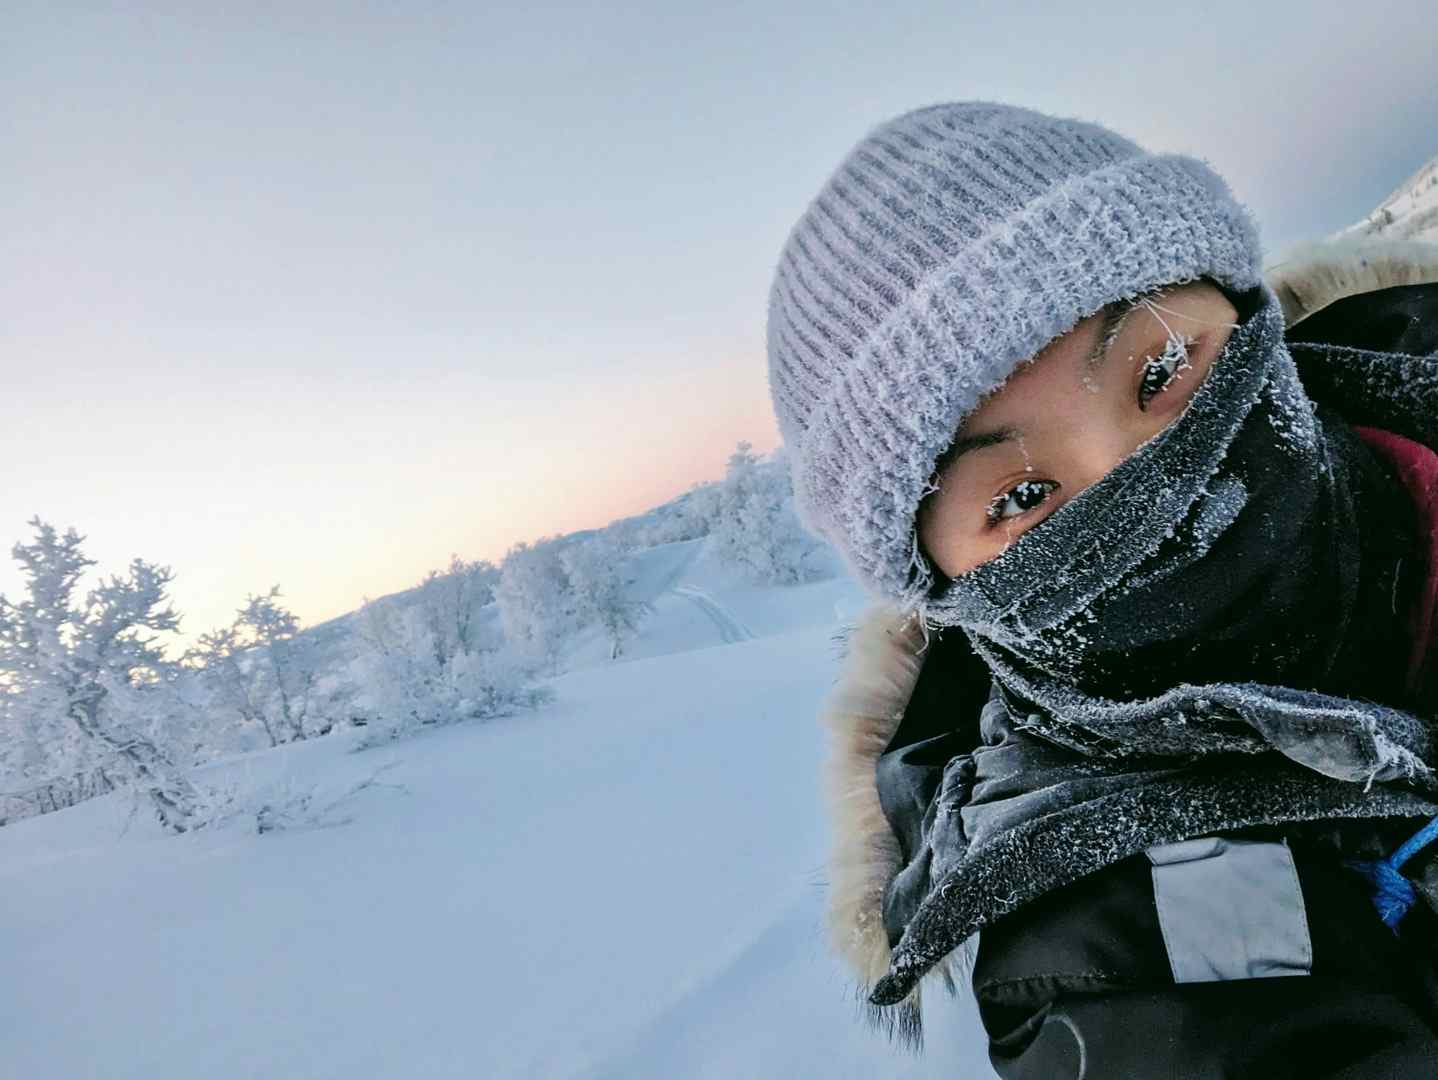 Amazing arctic adventure!